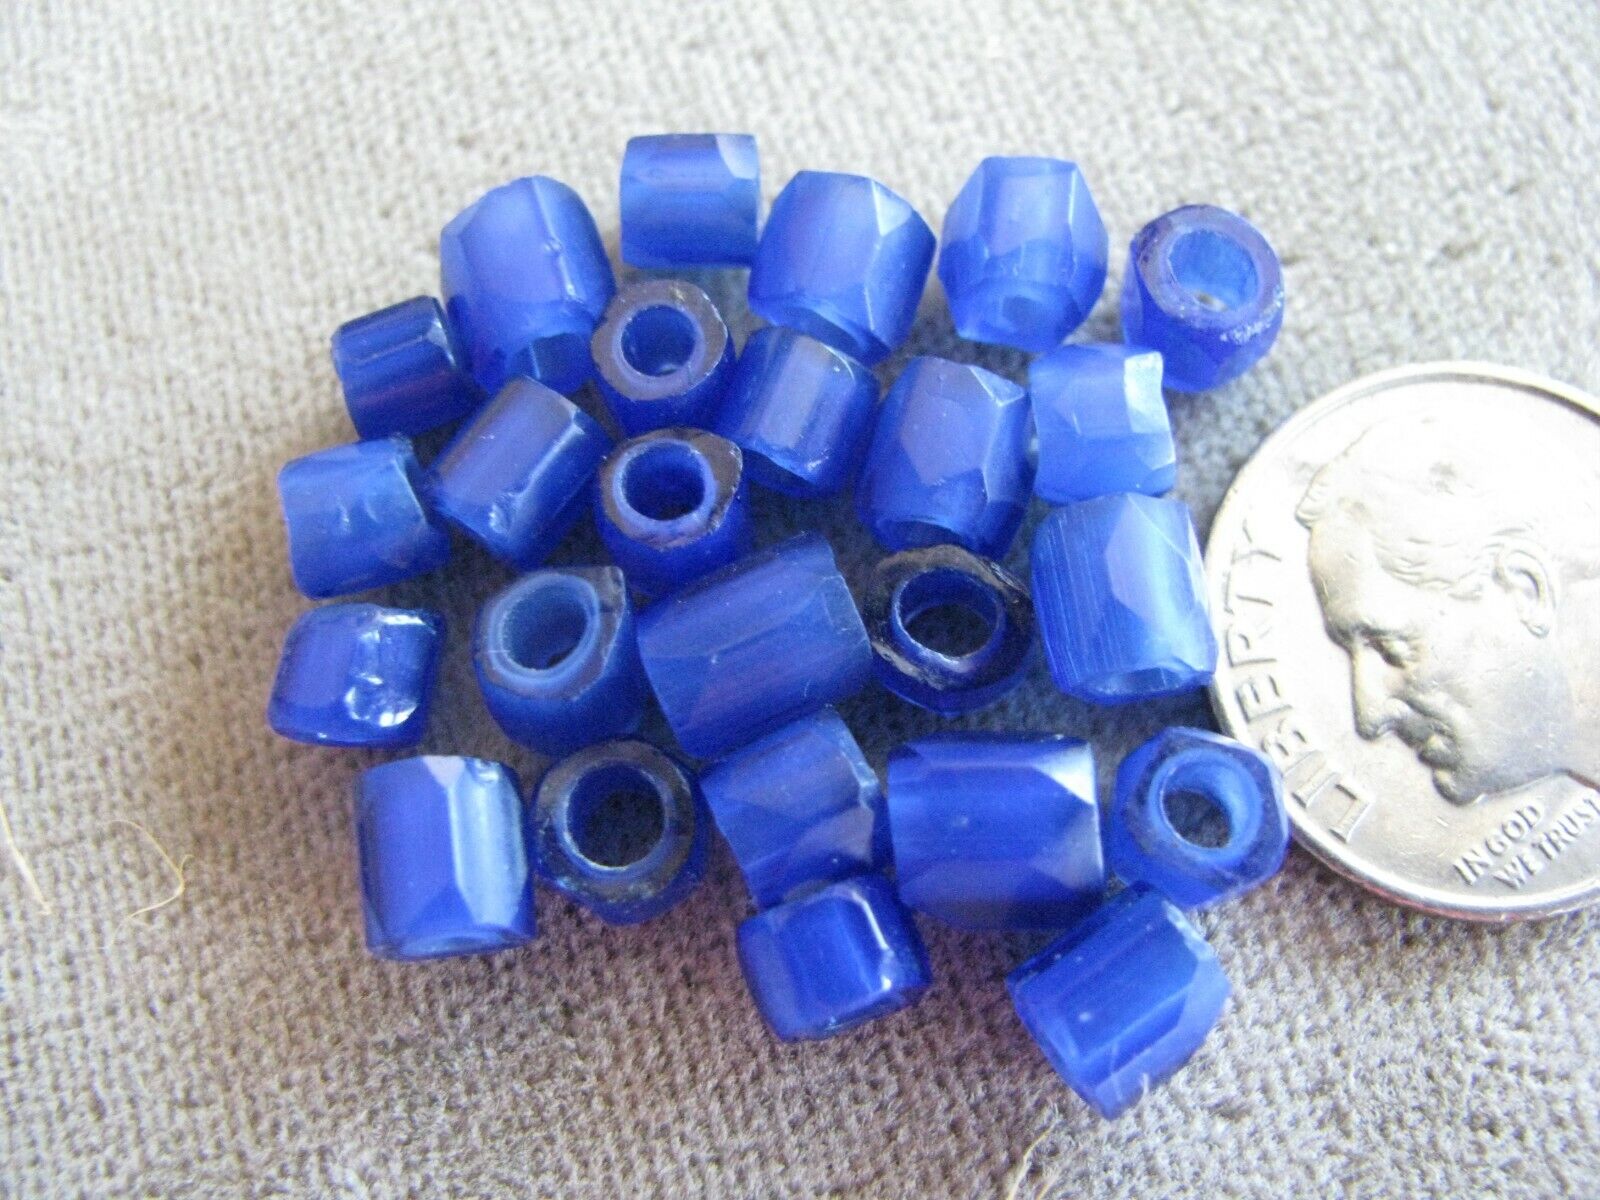 Lot of 25 Antique Czech Glass African Trade Beads Russian Blues 5mm Без бренда - фотография #3